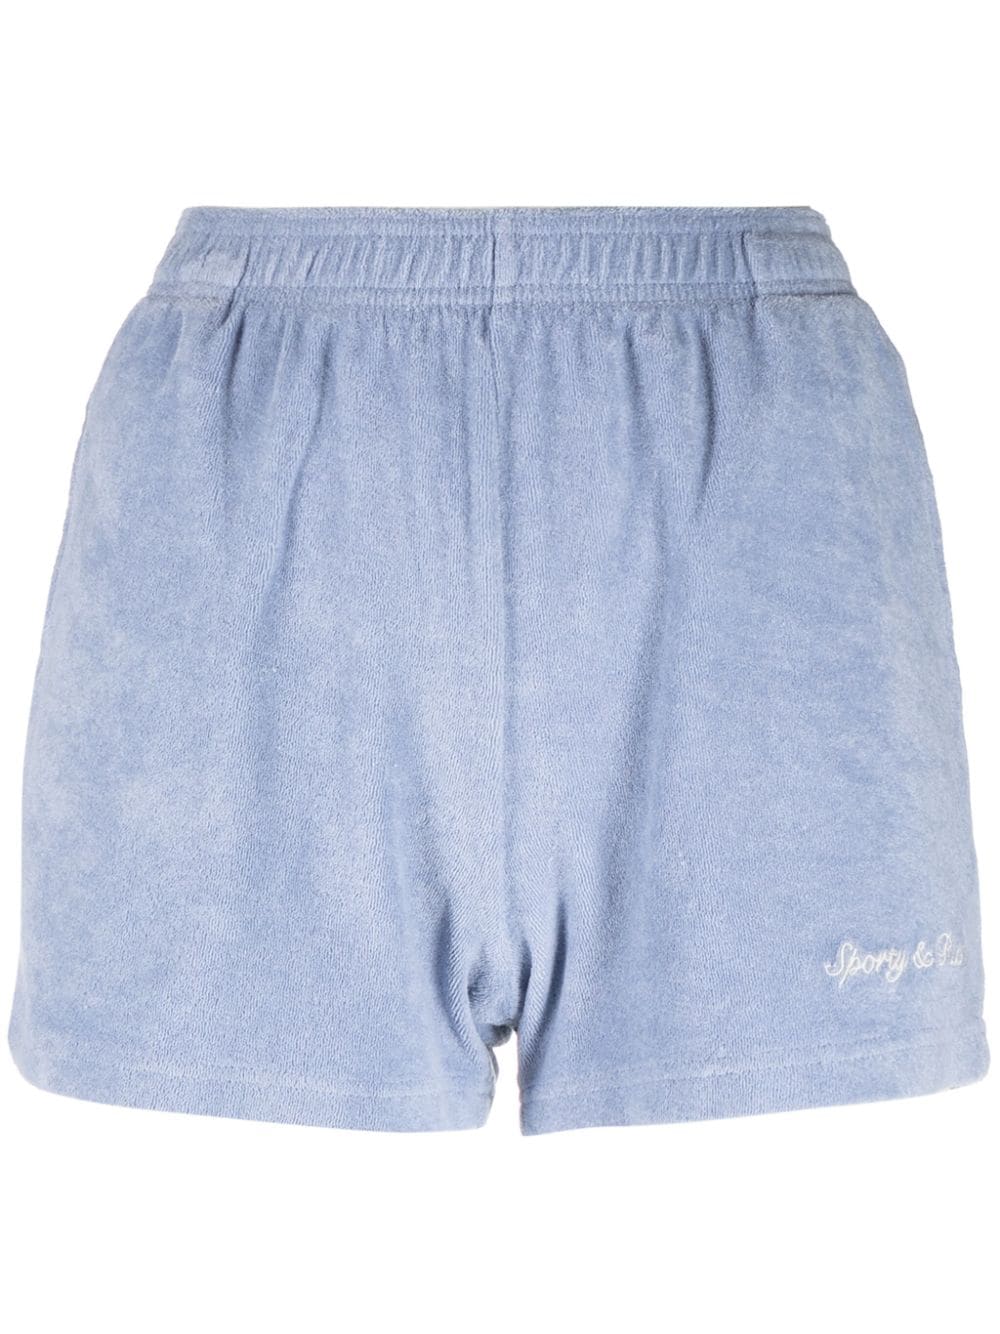 Sporty & Rich Syracuse terry-cloth shorts - Blue von Sporty & Rich